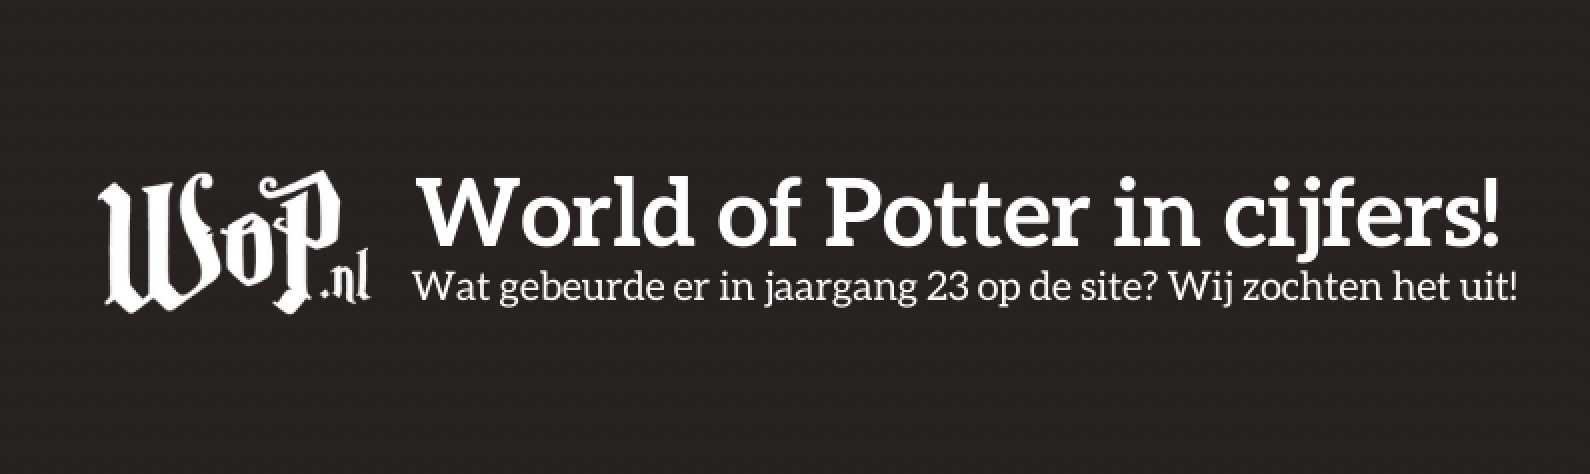 World of Potter in cijfers - Jaargang 23